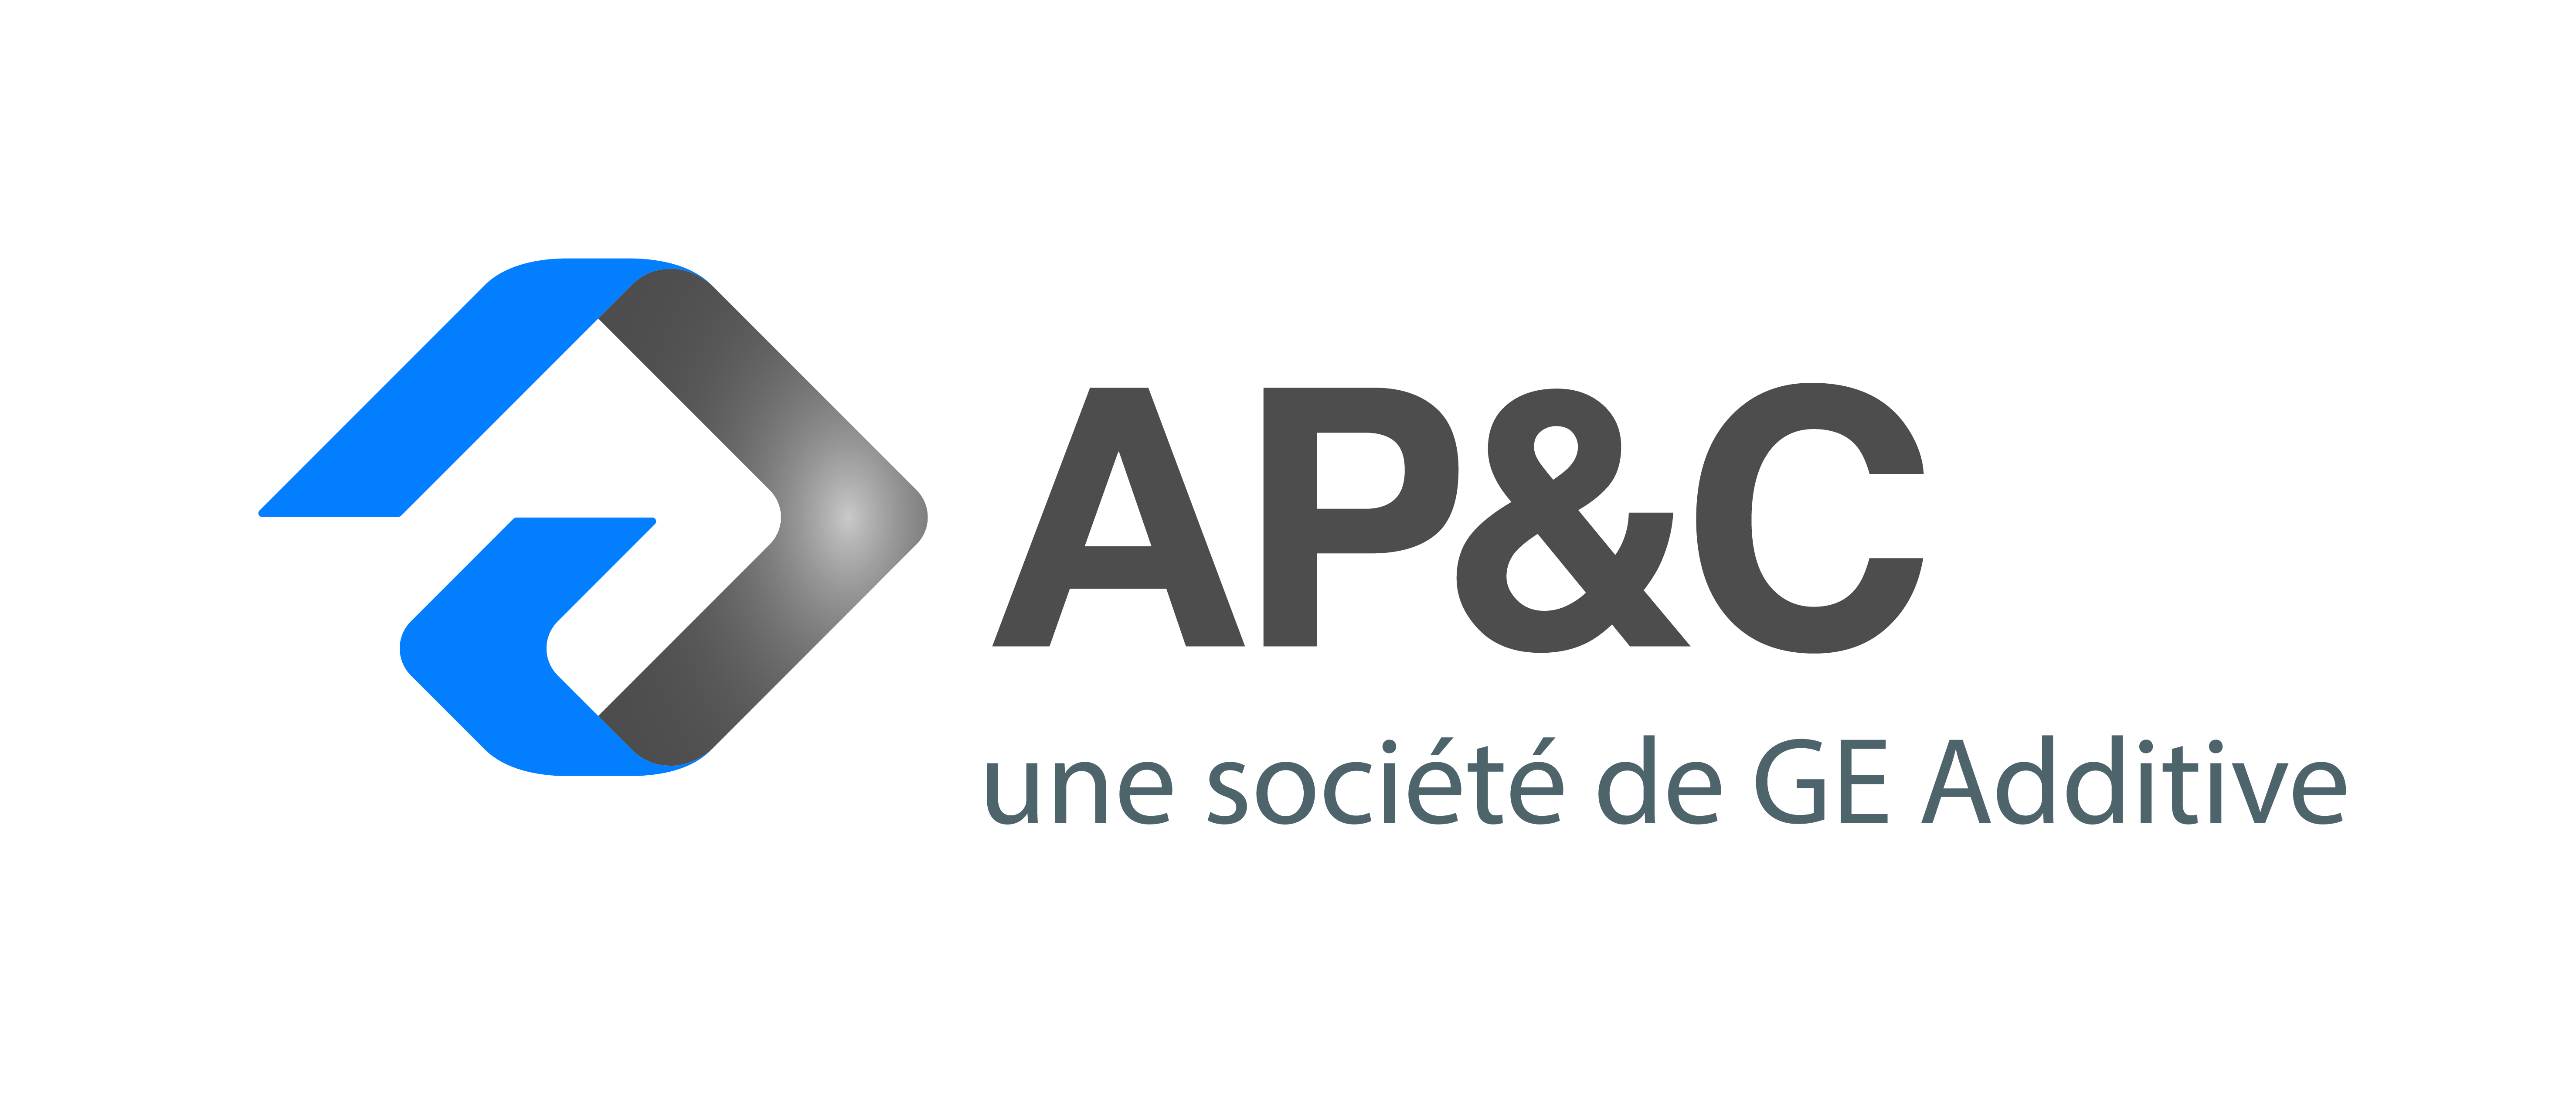 AP&C une société GE Additive